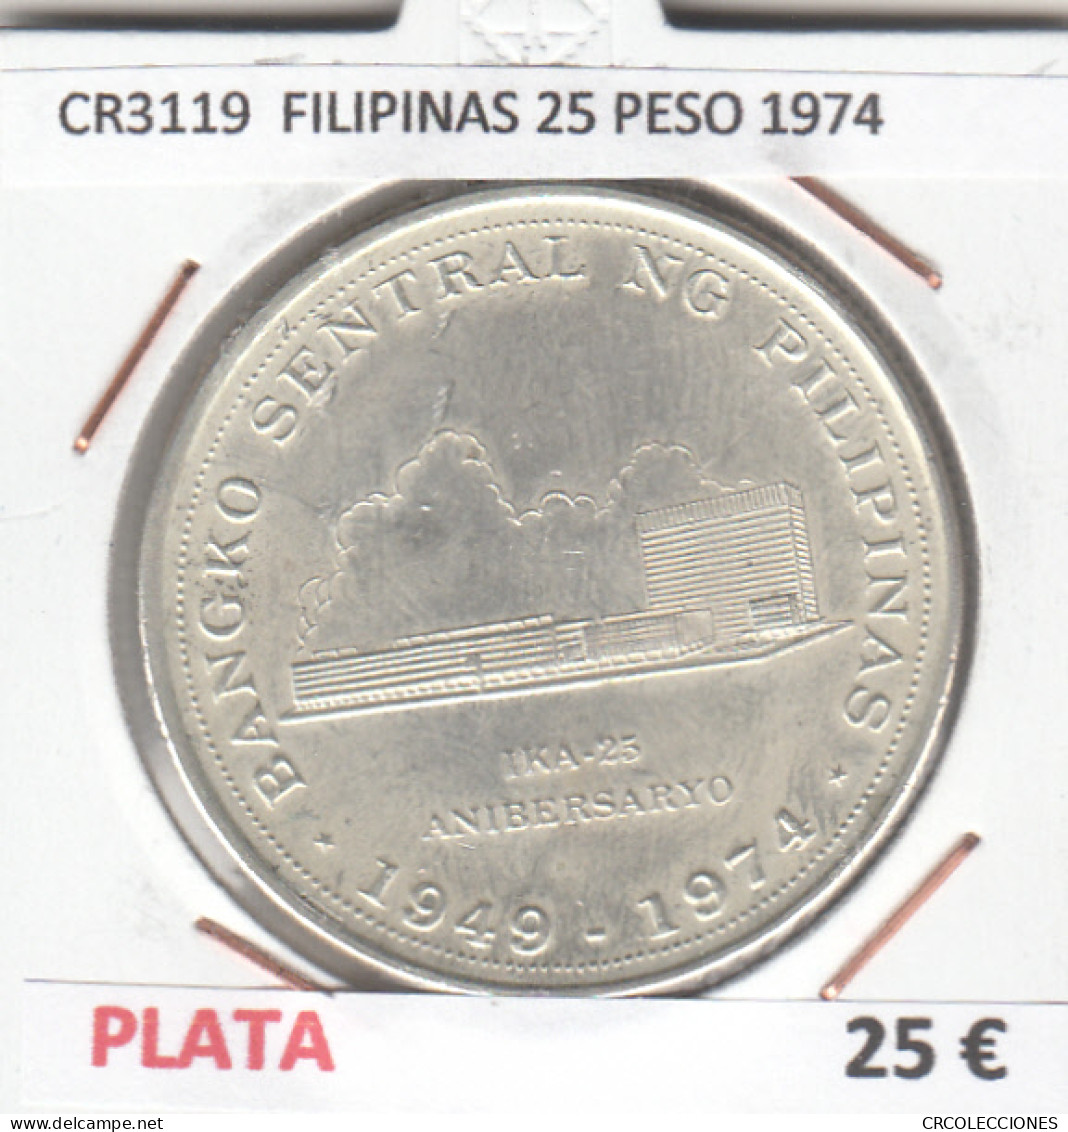 CR3119 MONEDA FILIPINAS 25 PESO 1974 MBC PLATA - Other - Asia